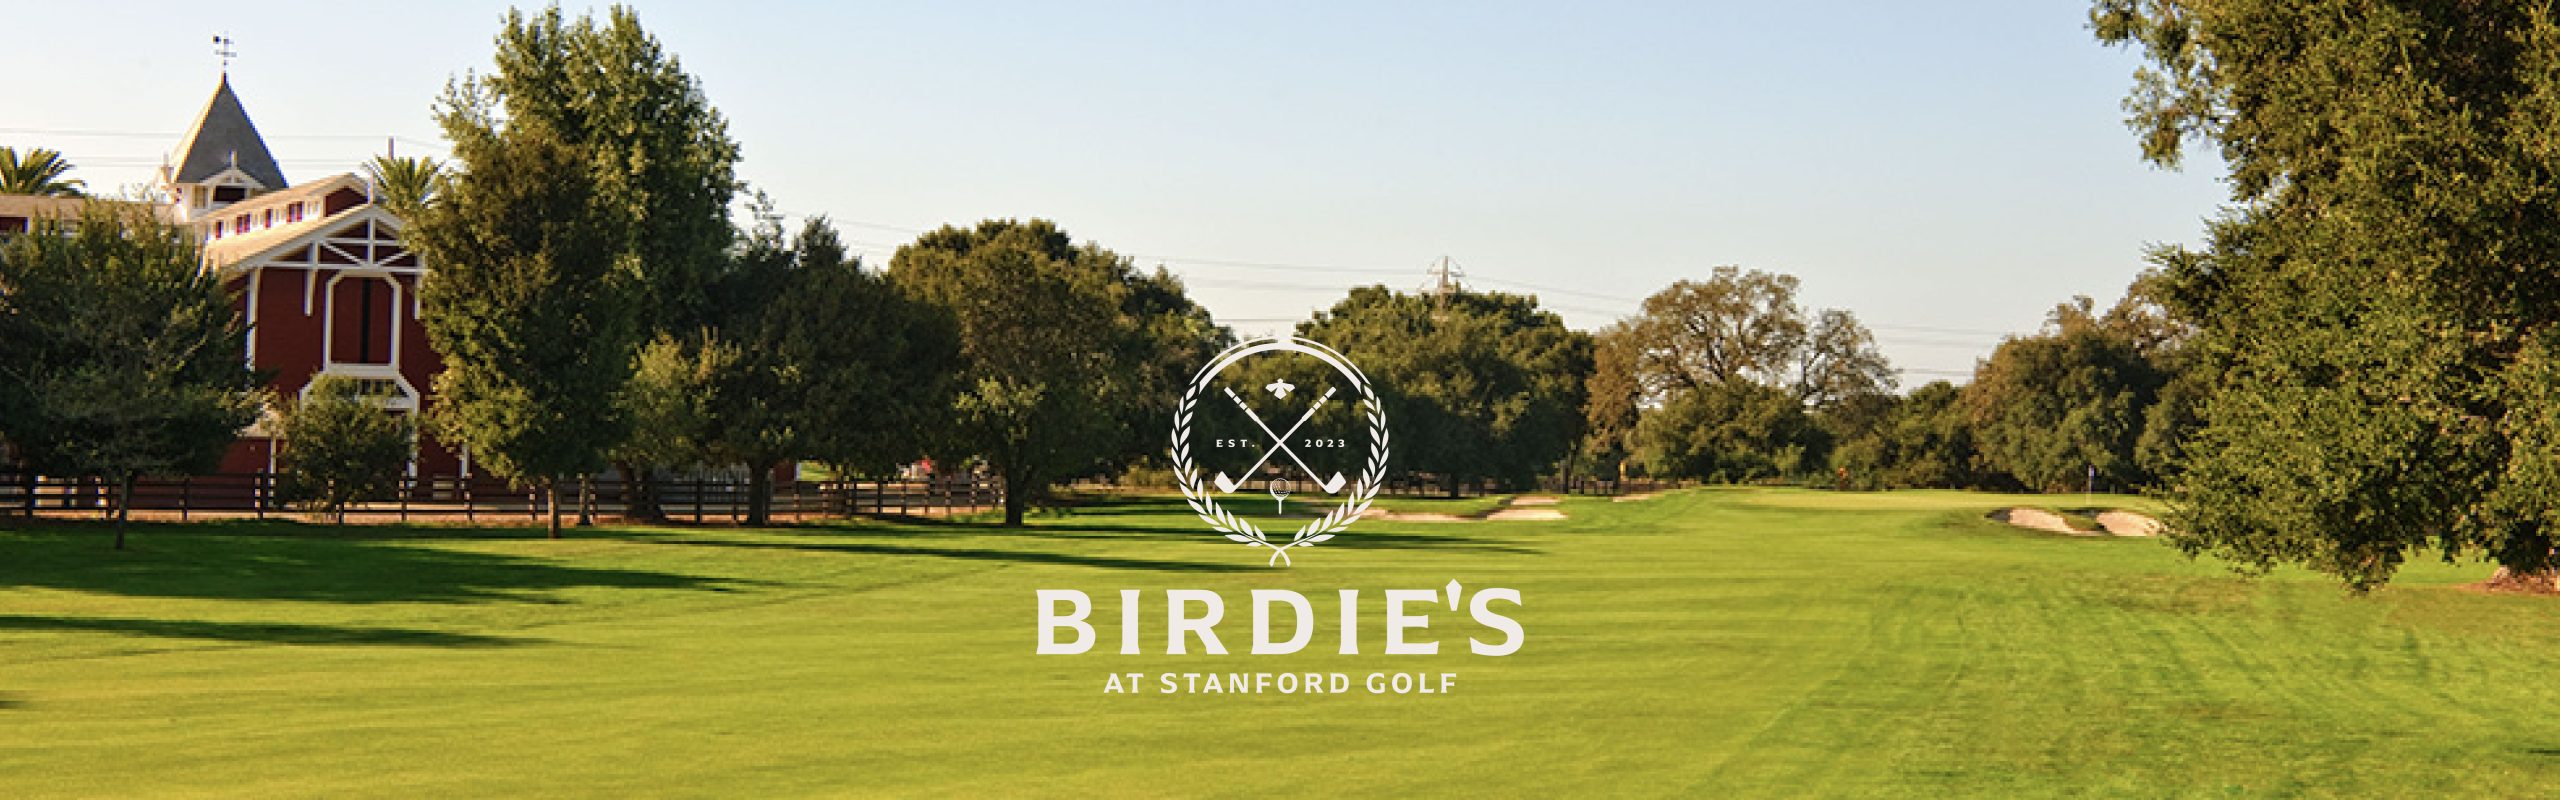 Birdies at Stanford Golf logo design